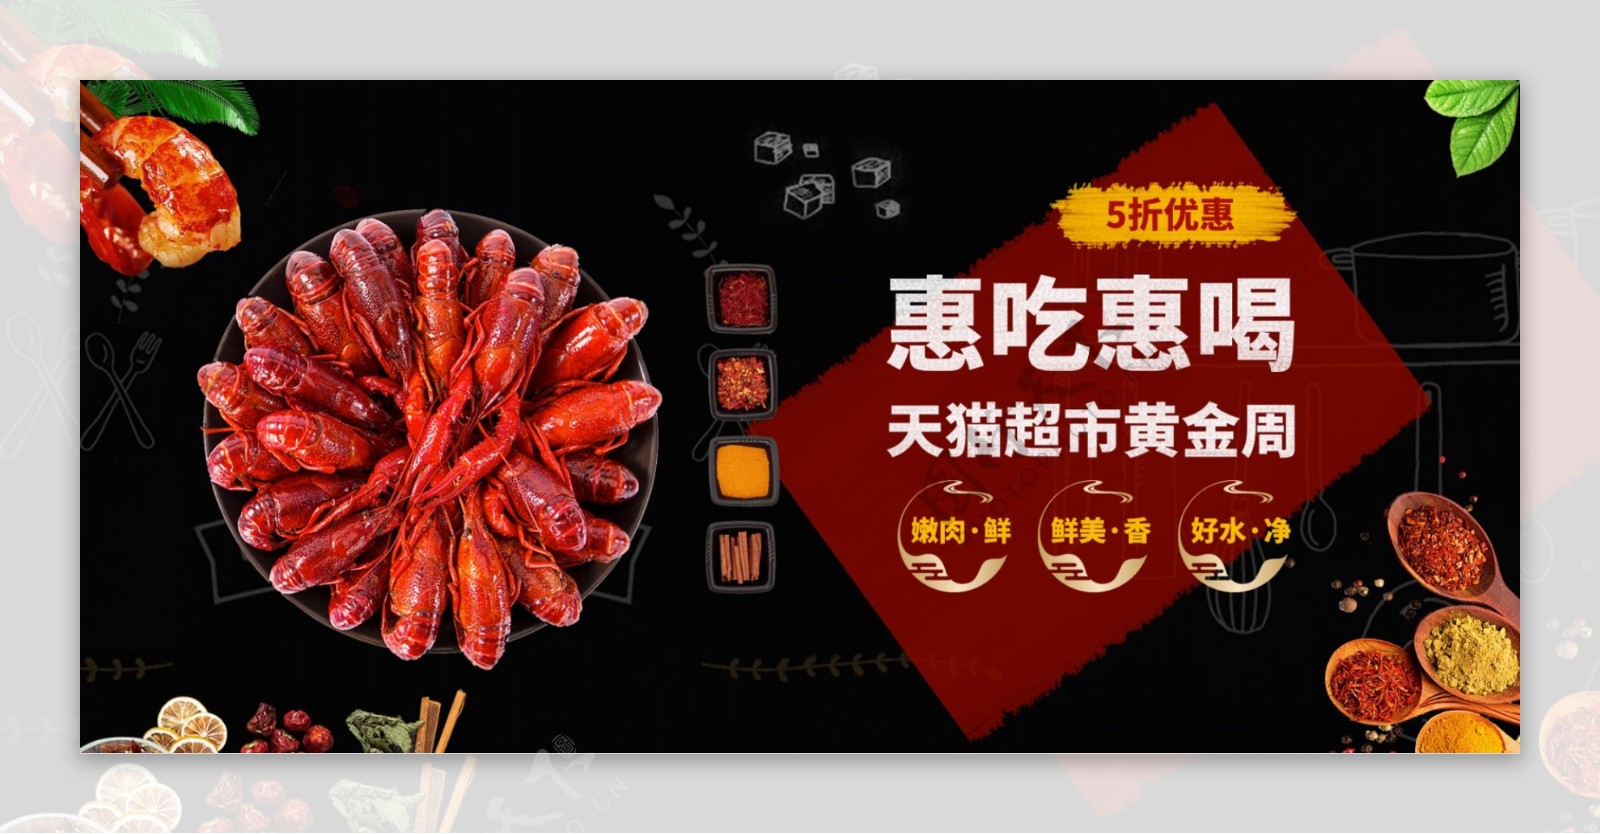 电商淘宝天猫超市黄金周节日促销海报食品